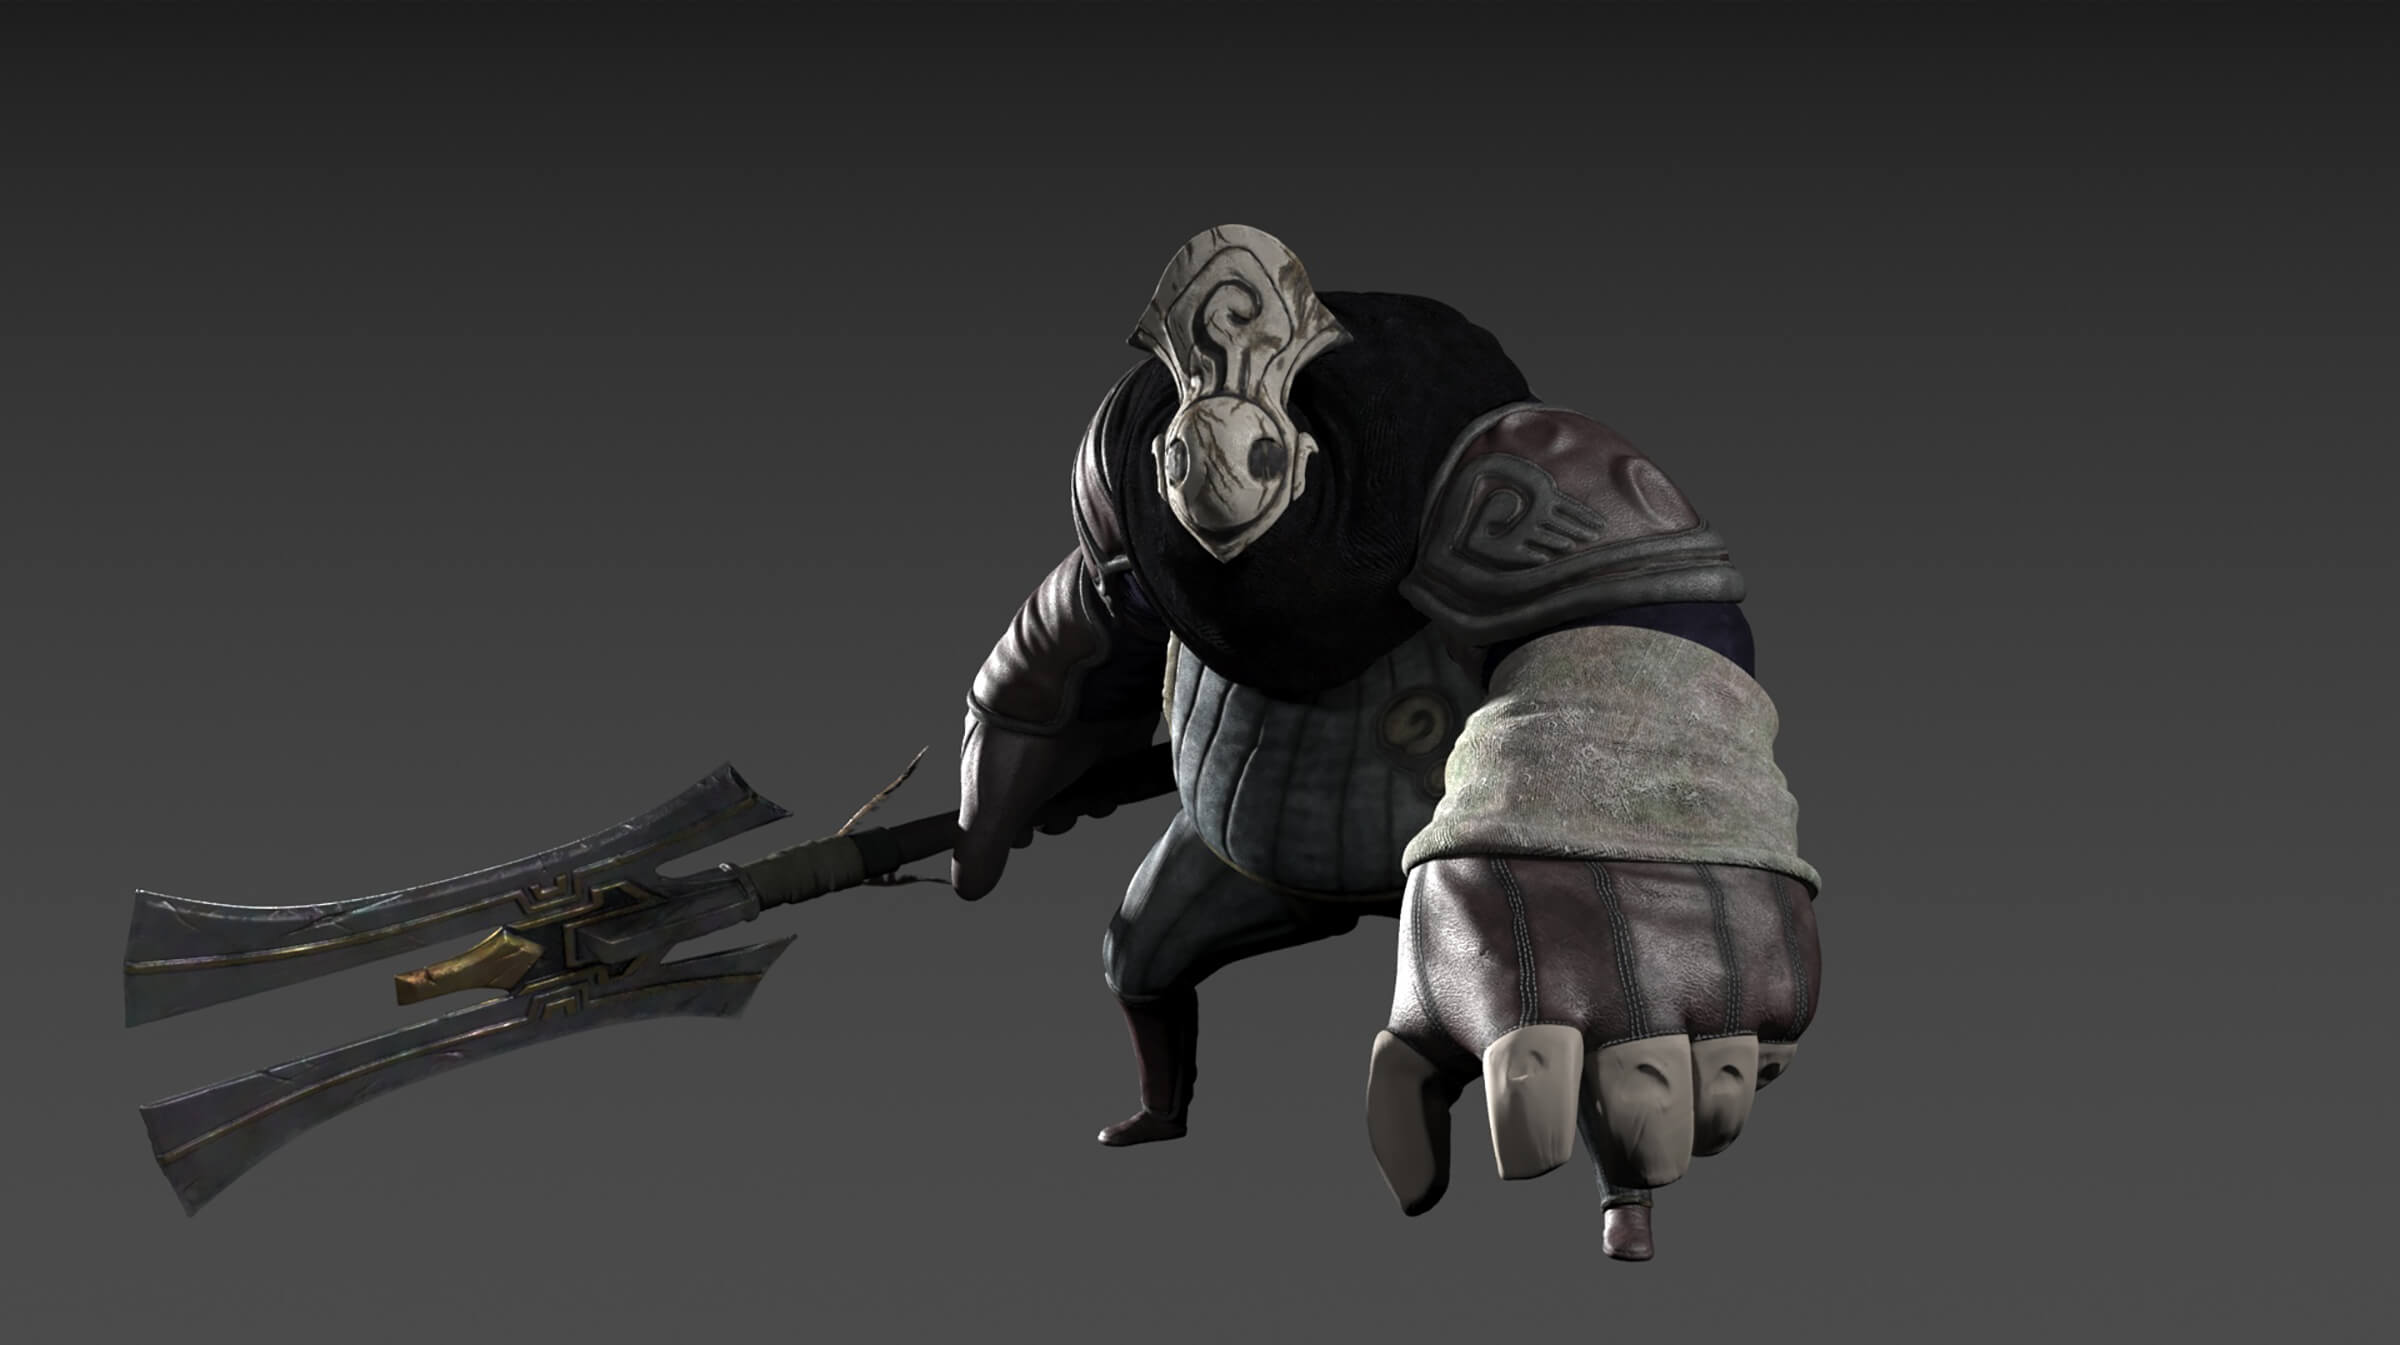 Un robusto personaje en 3D con su equipo de batalla de tela y una máscara gris desgastada sostiene, a un lado, un arma grande de dos puntas.